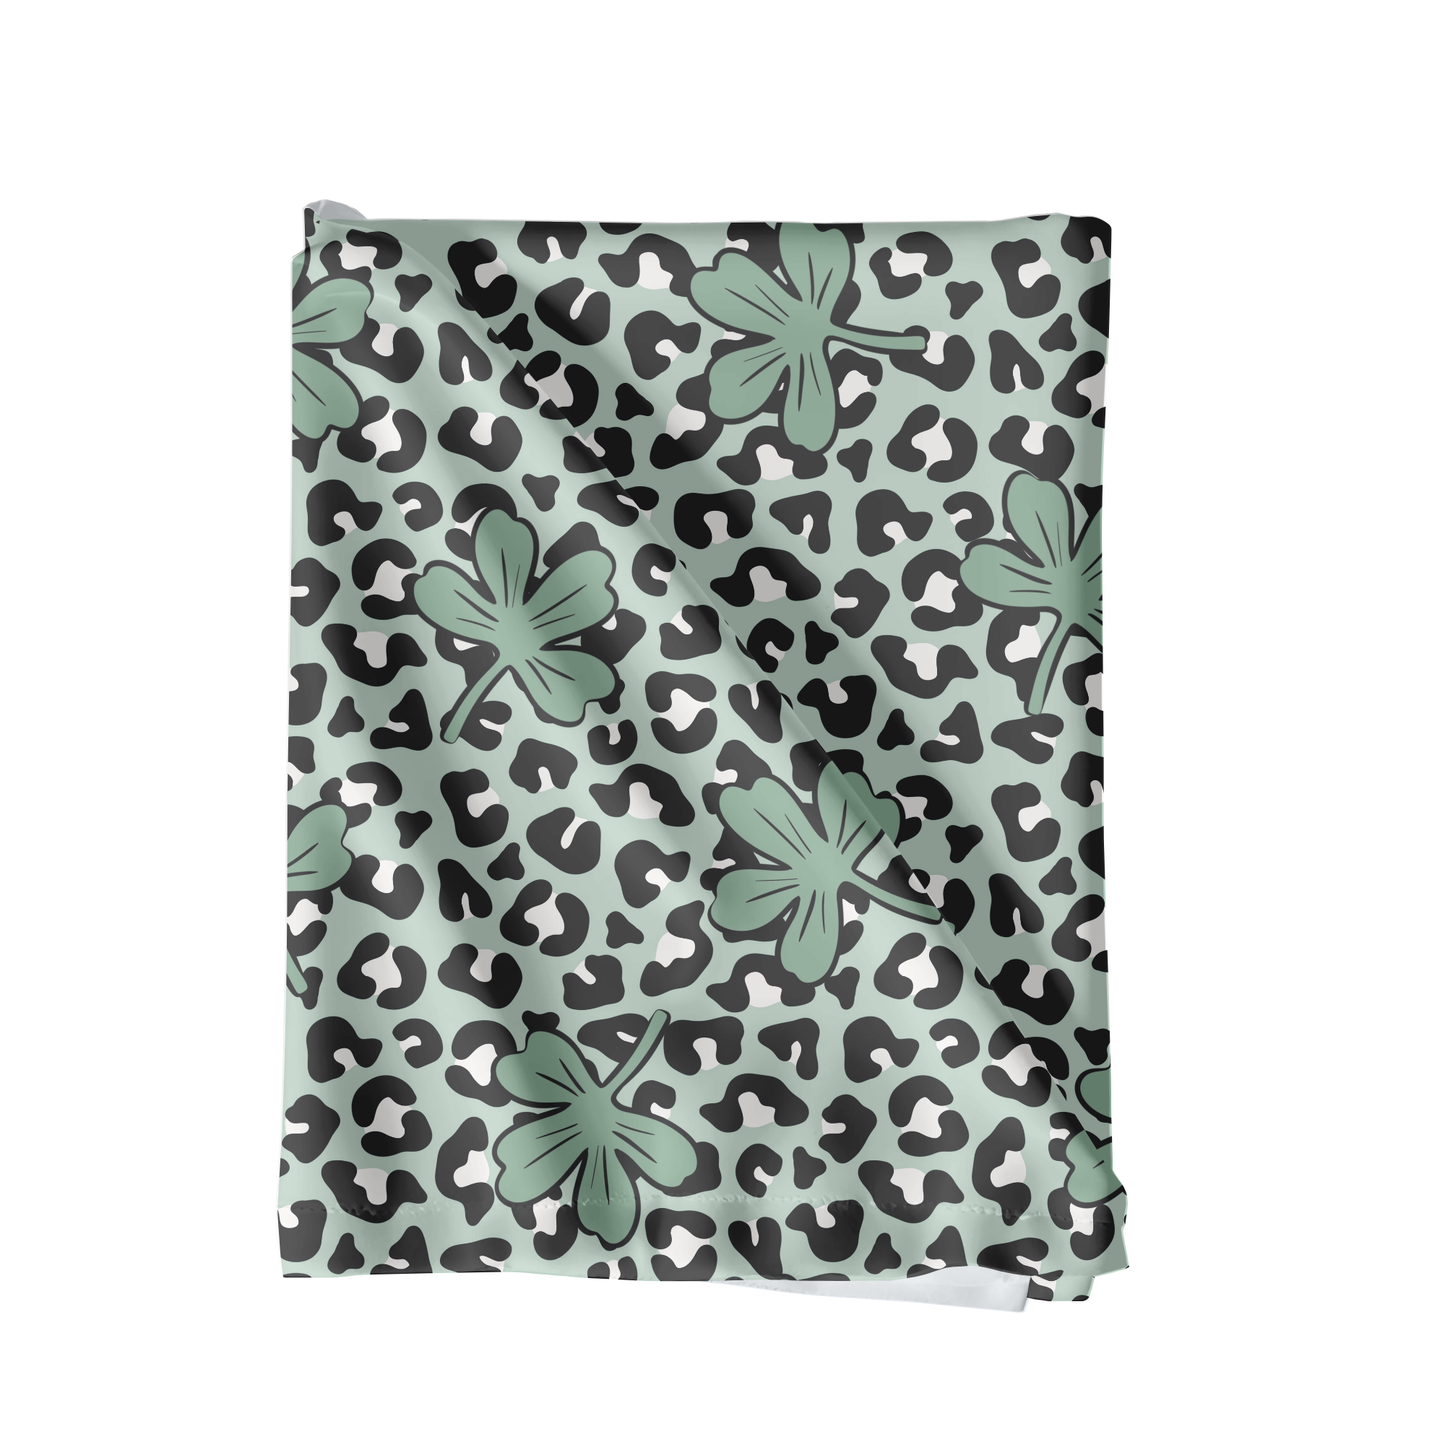 Cheetah clover seamless pattern